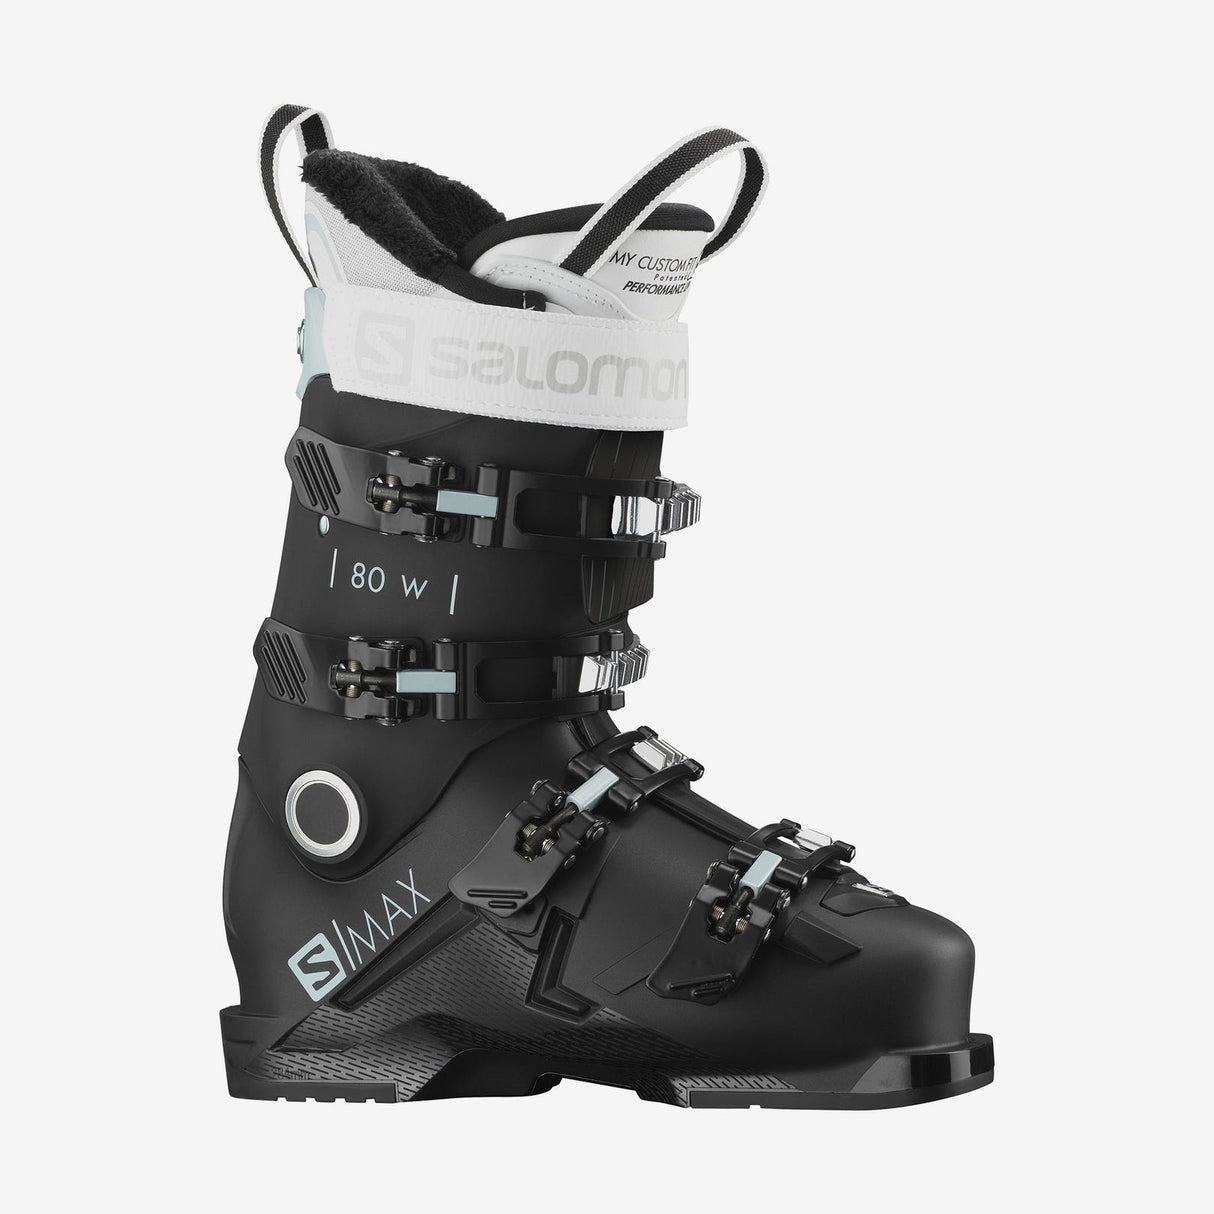 Salomon S/Max 80 W Ski Boots